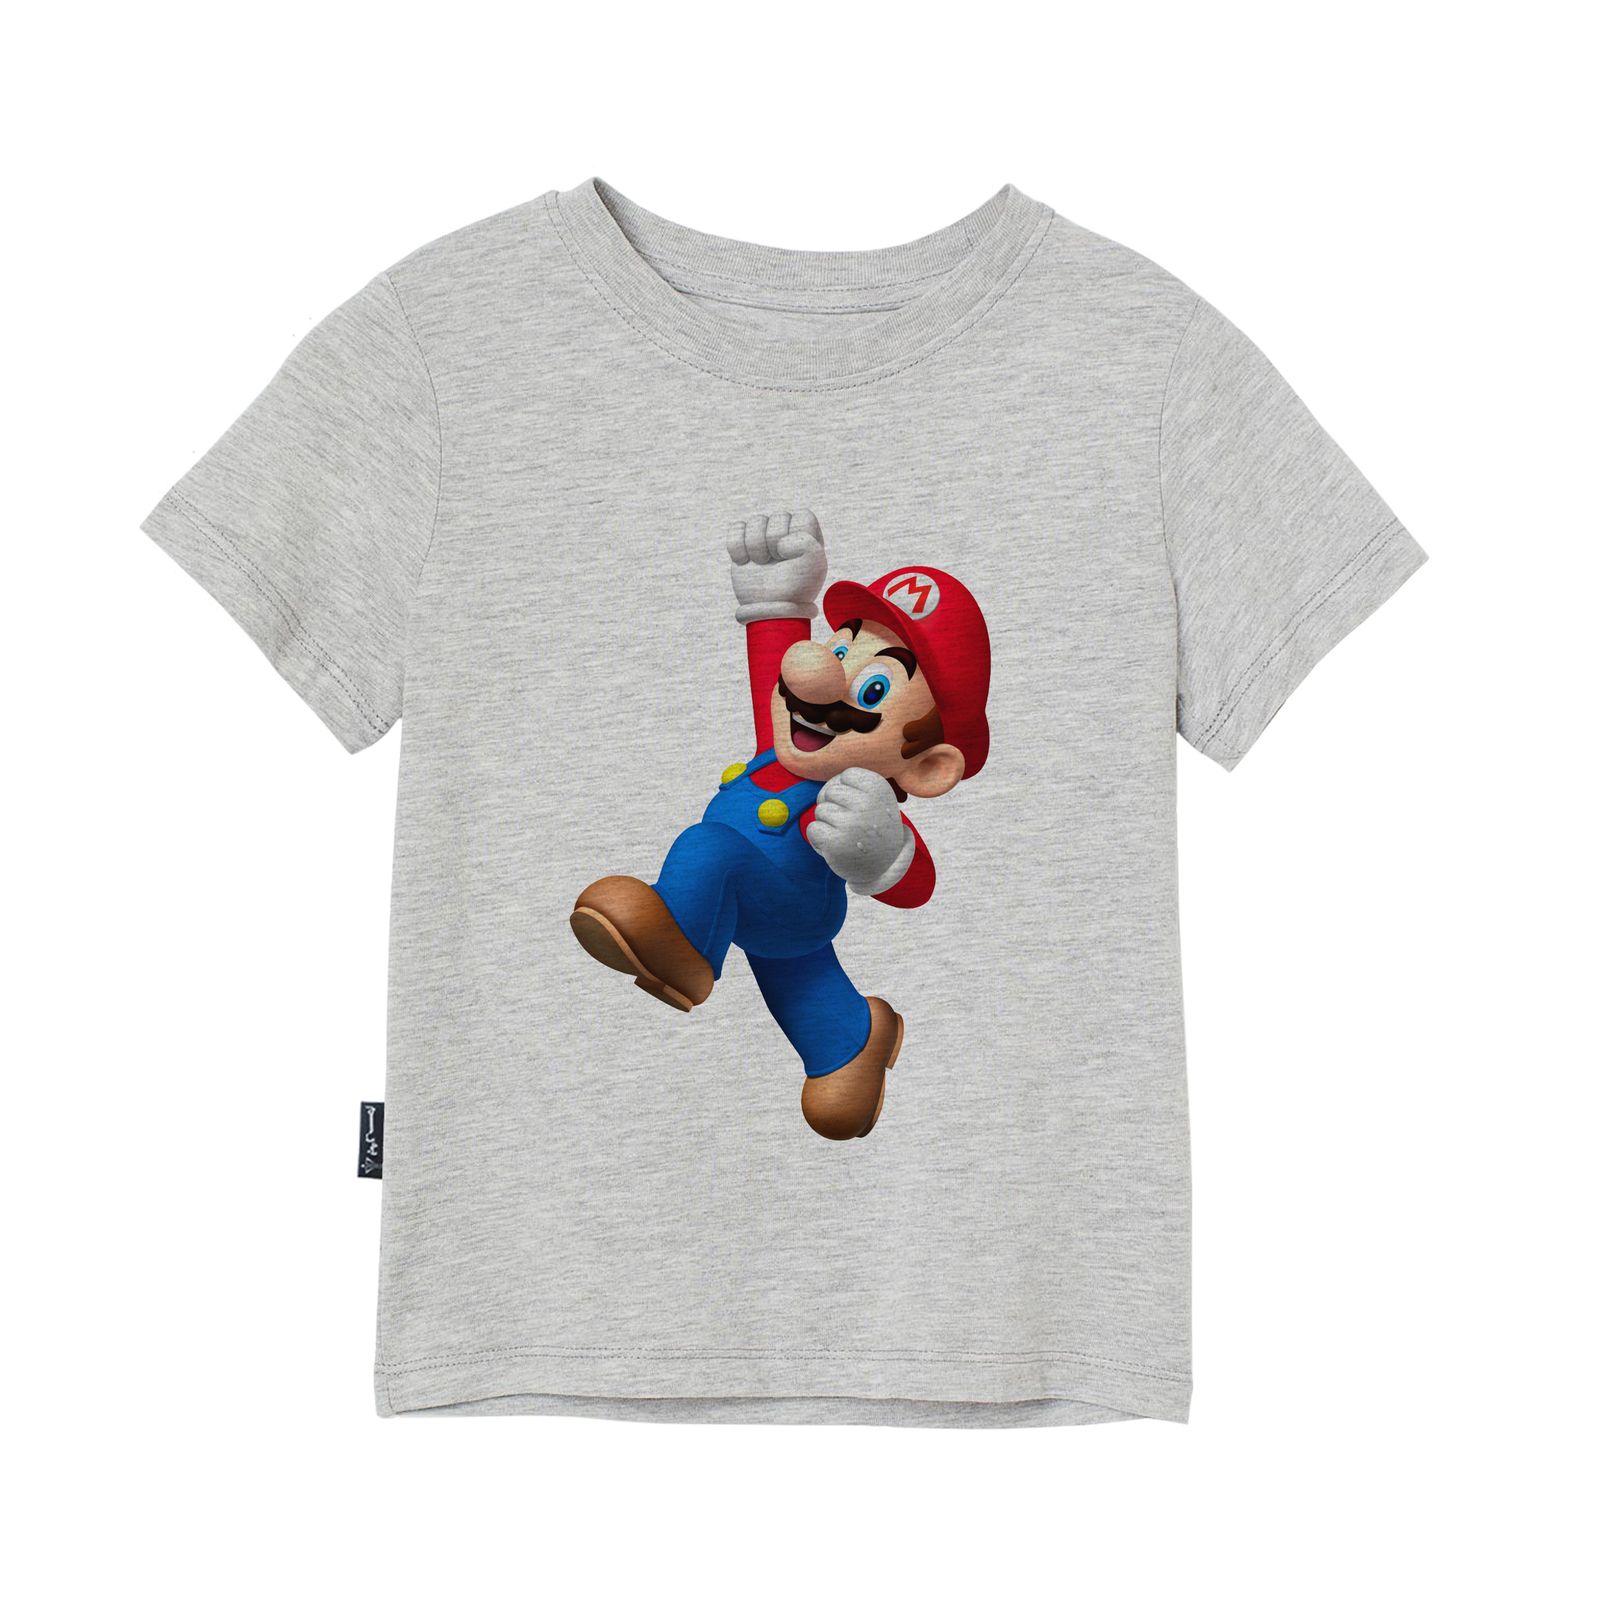 تی شرت آستین کوتاه بچگانه به رسم مدل سوپر ماریو کد 1133 -  - 1